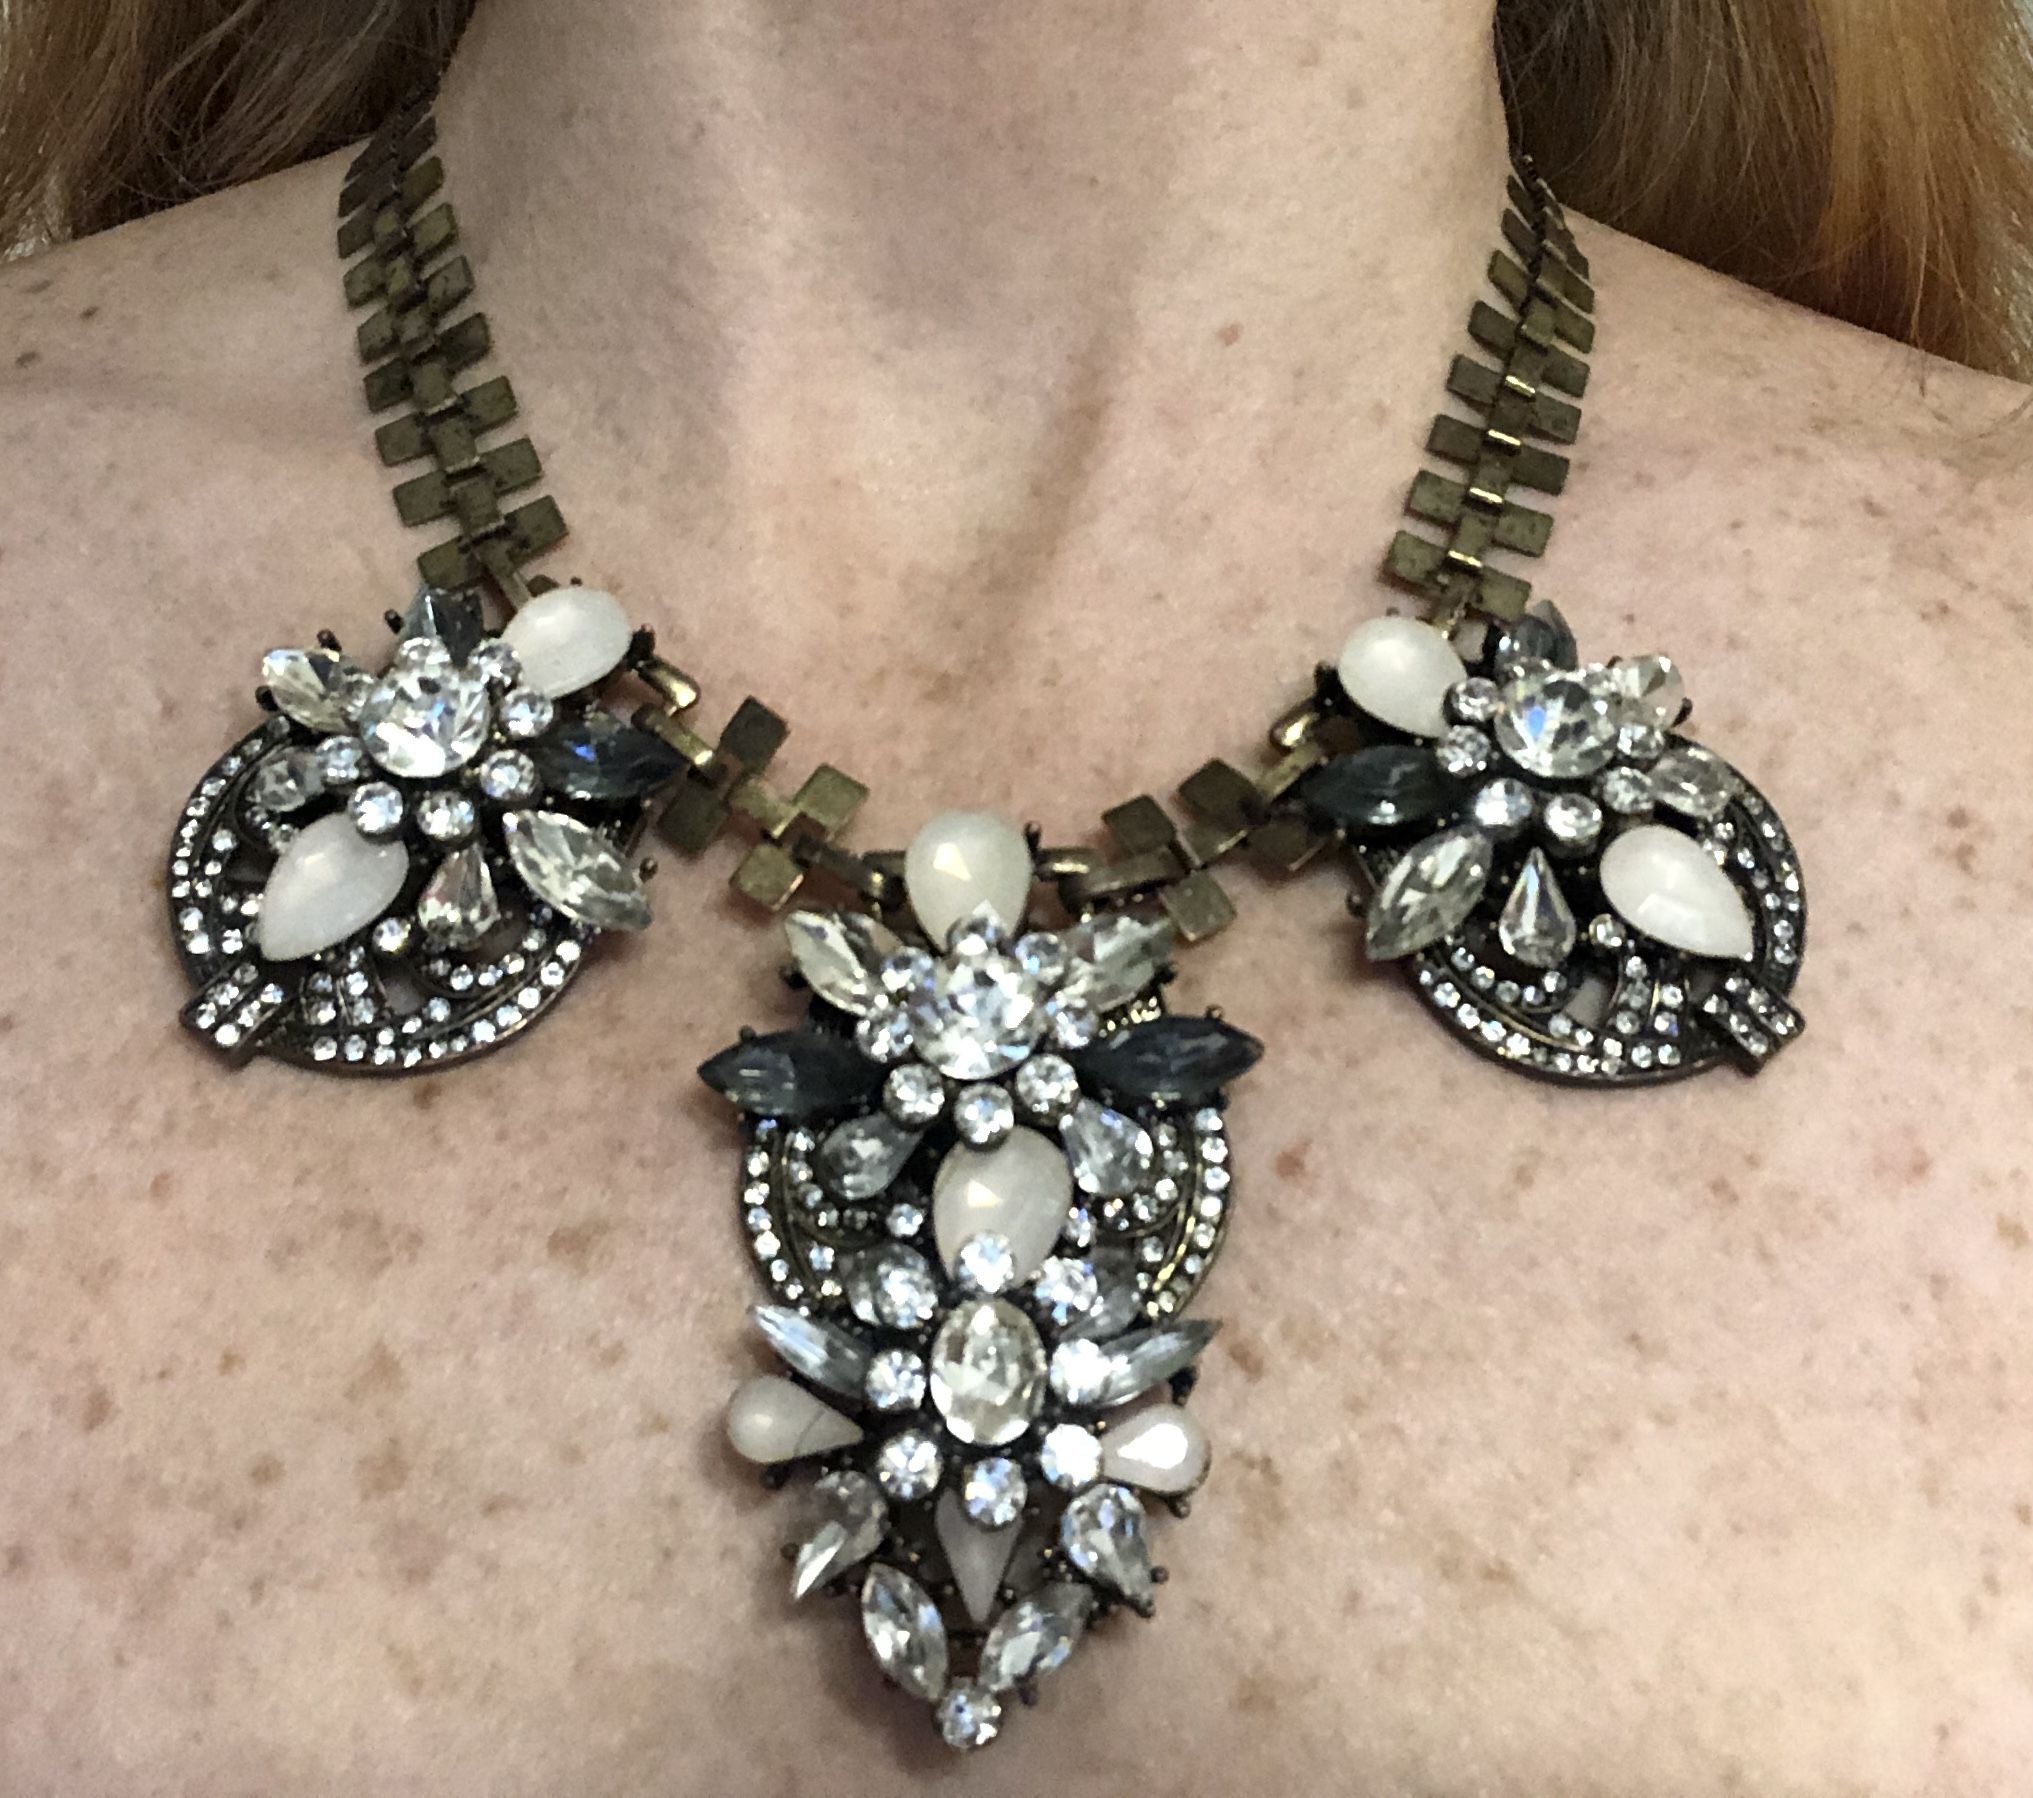 Women’s Gemstone Vintage Necklace (Stunning!!)